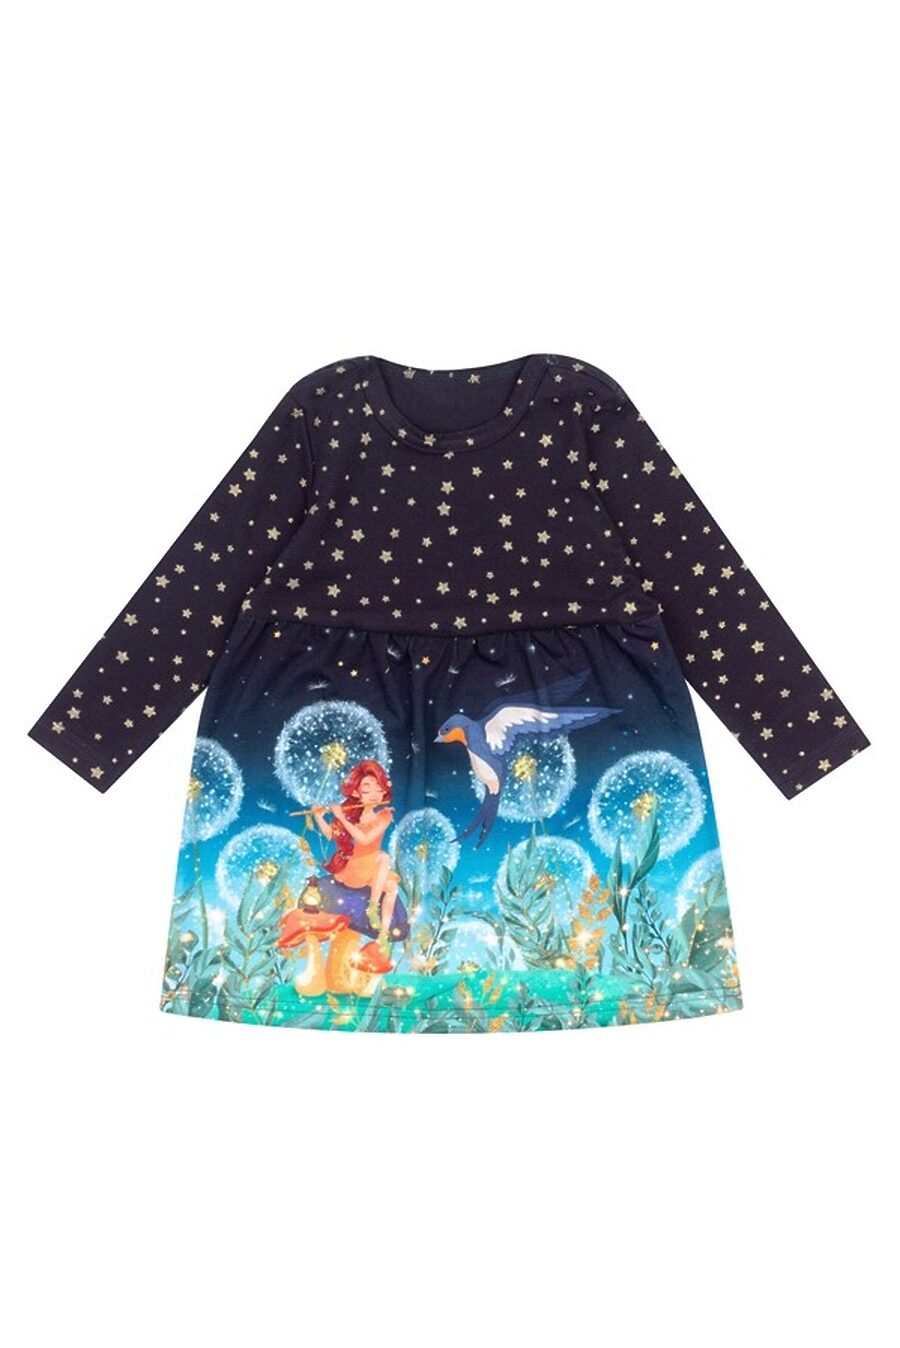 Платье для девочек АПРЕЛЬ 683534 купить оптом от производителя. Совместная покупка детской одежды в OptMoyo